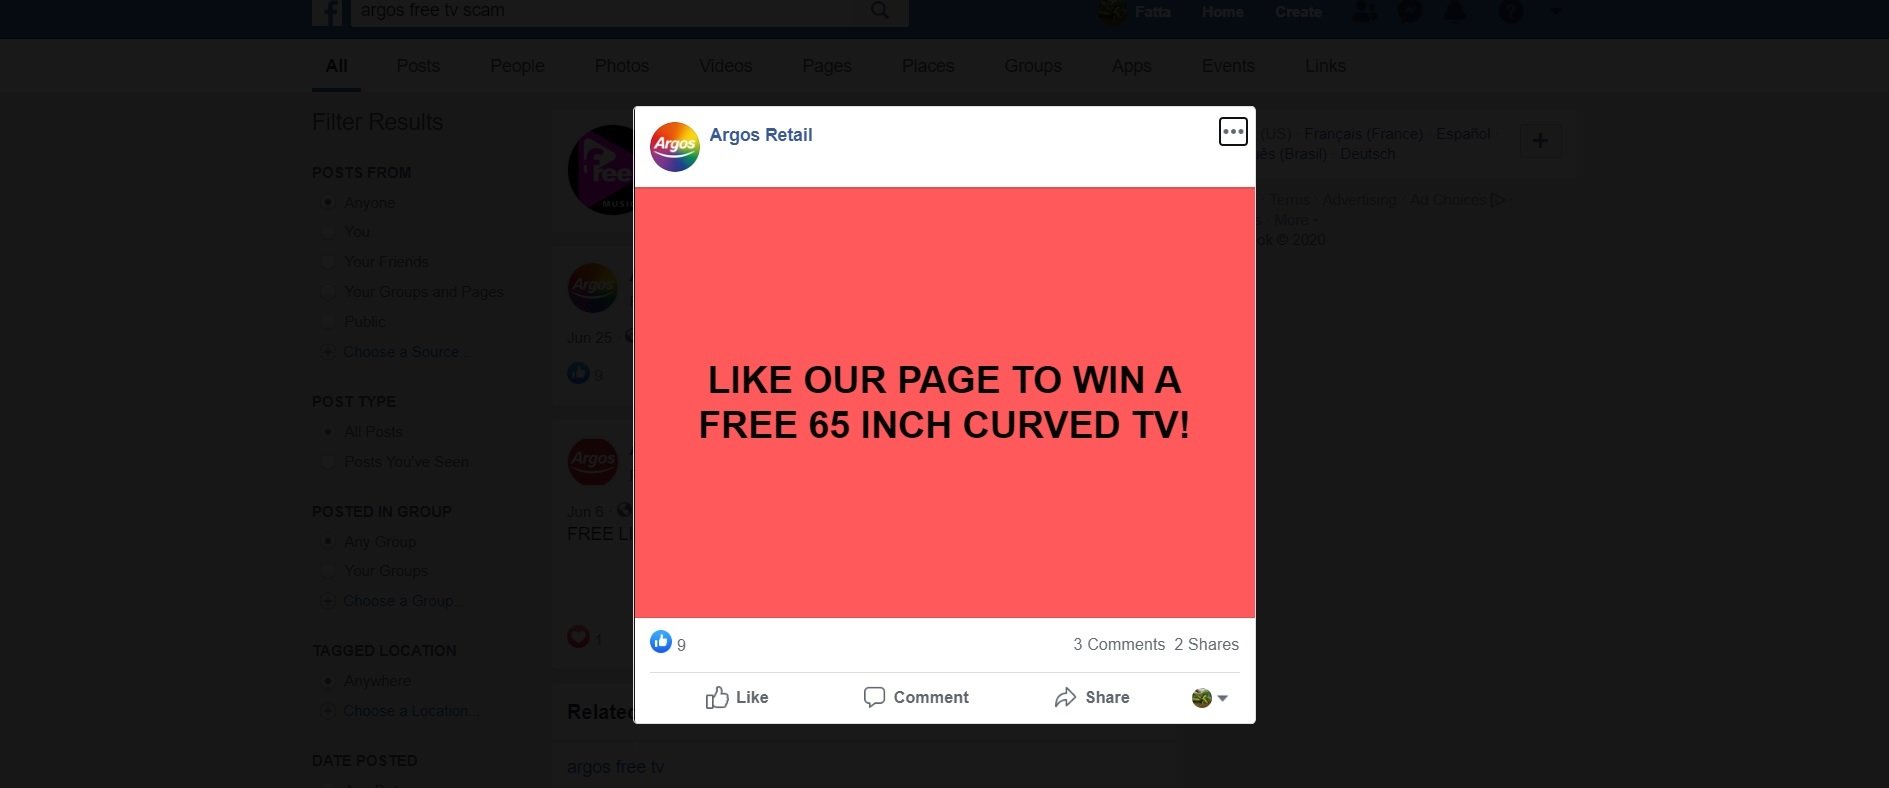 The Argos Free TV Scam on Facebook